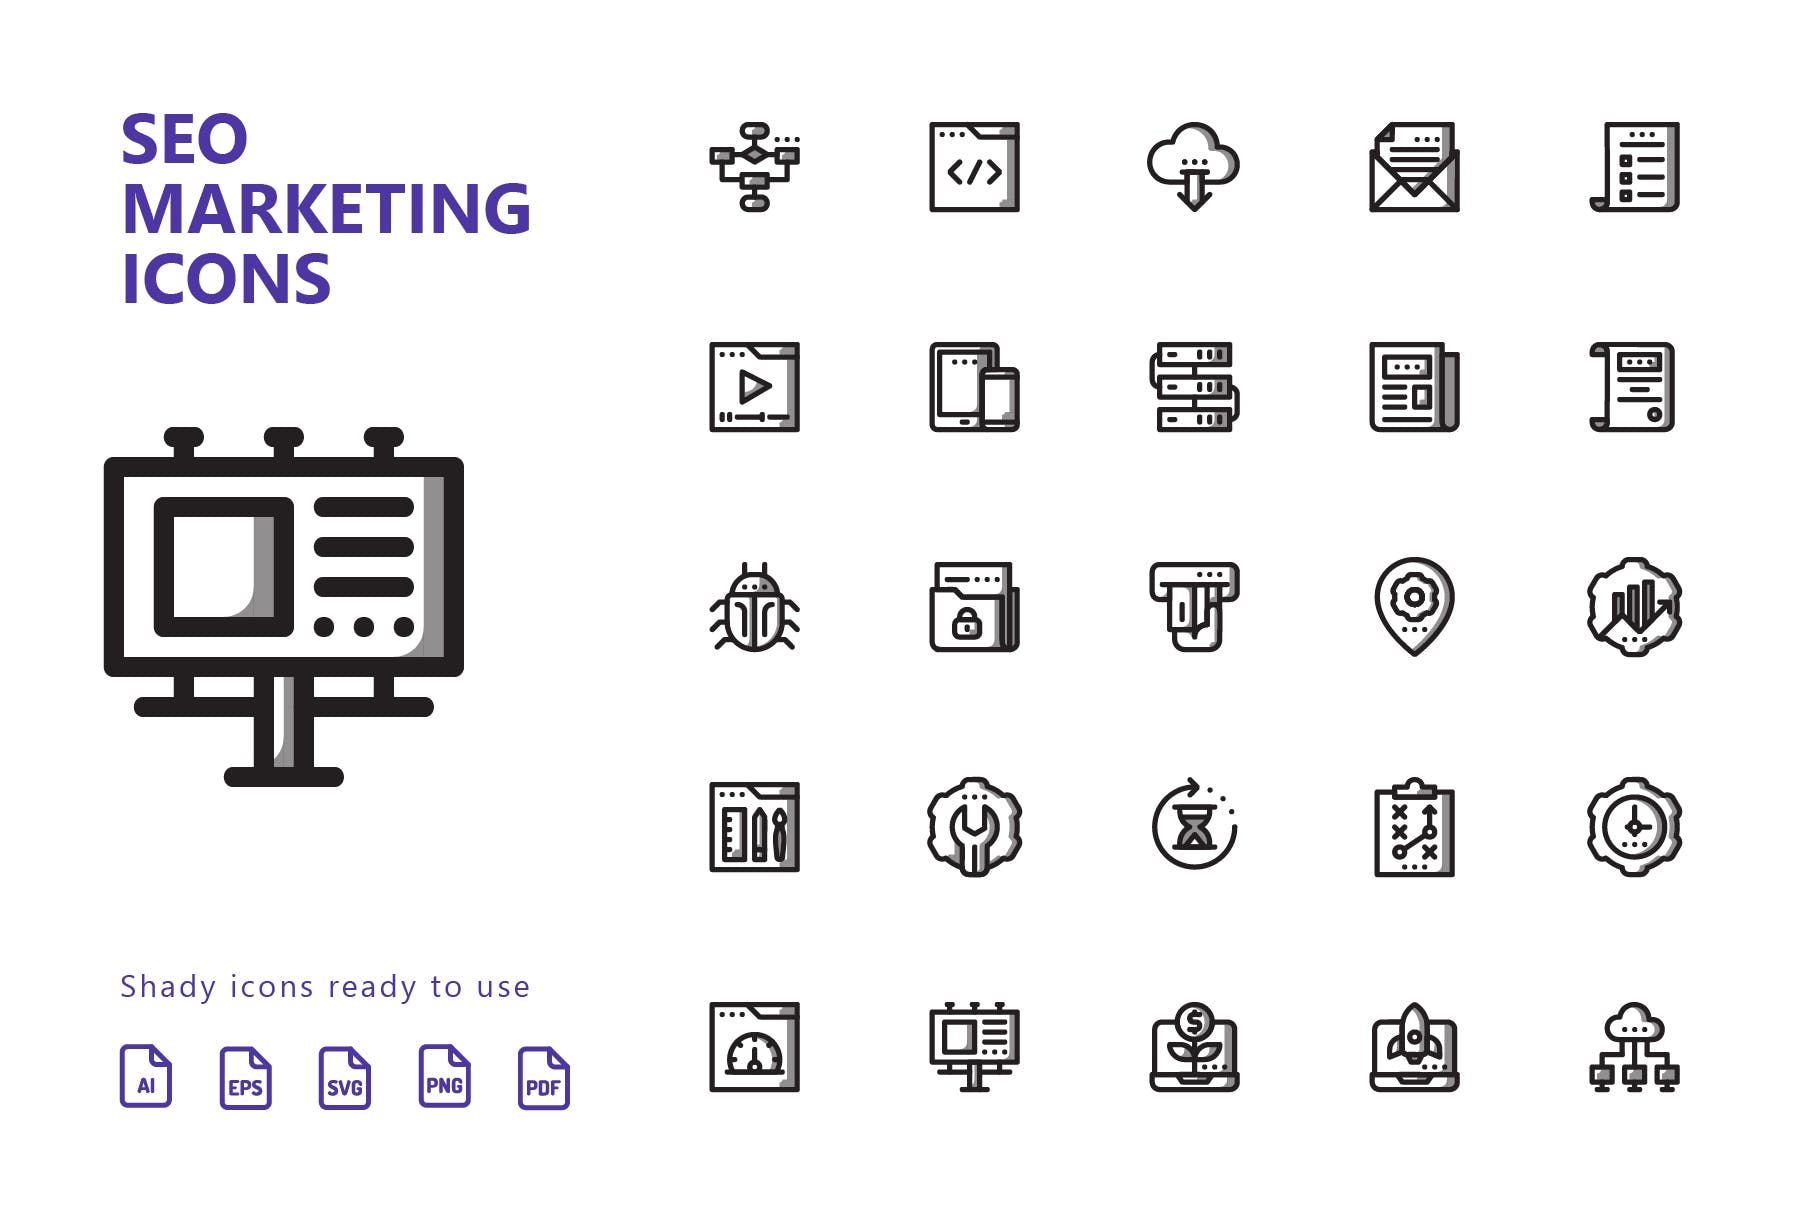 25枚SEO搜索引擎优化营销矢量阴影蚂蚁素材精选图标v1 SEO Marketing Shady Icons插图(1)